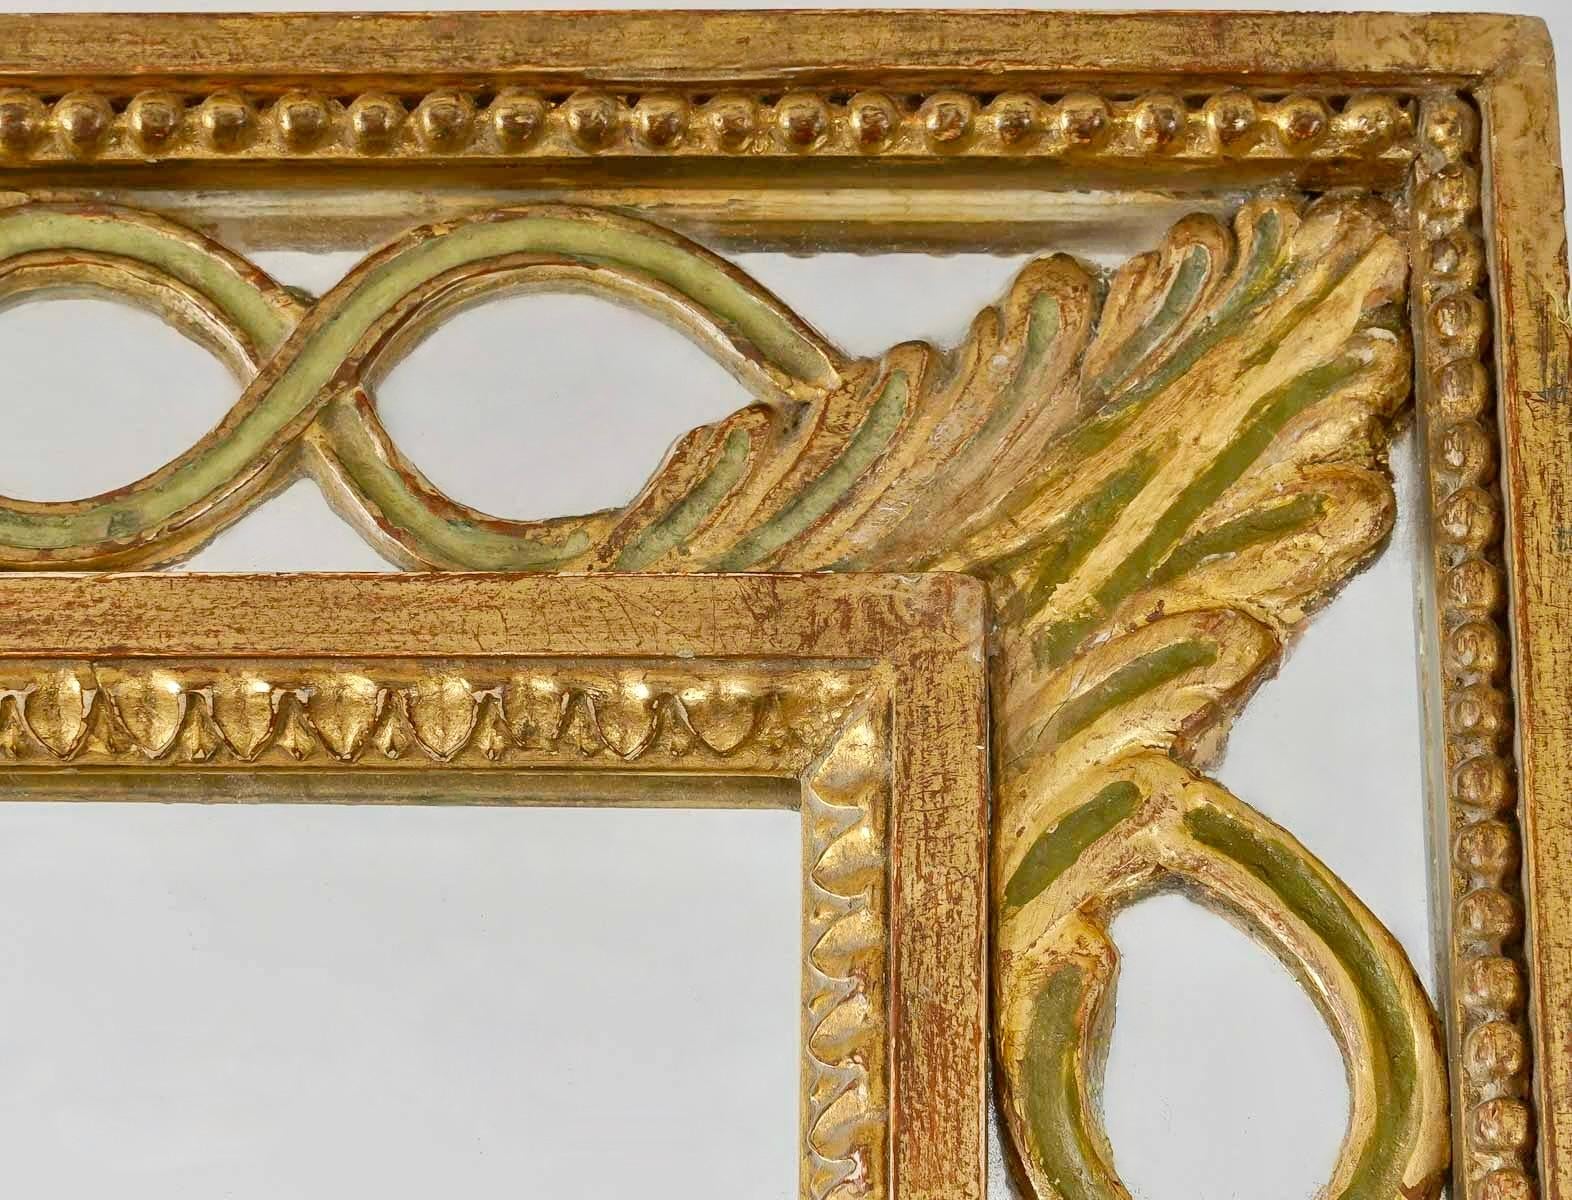 1960 Miroir a parclose de la maison Roche

Bestehend aus einem Rahmen aus vergoldetem Holz, der auf der Innenseite mit einer Einfassung aus vergoldetem Holz verziert und unterstrichen ist, die ein vergoldetes Holzgeflecht bildet, das am Rand durch